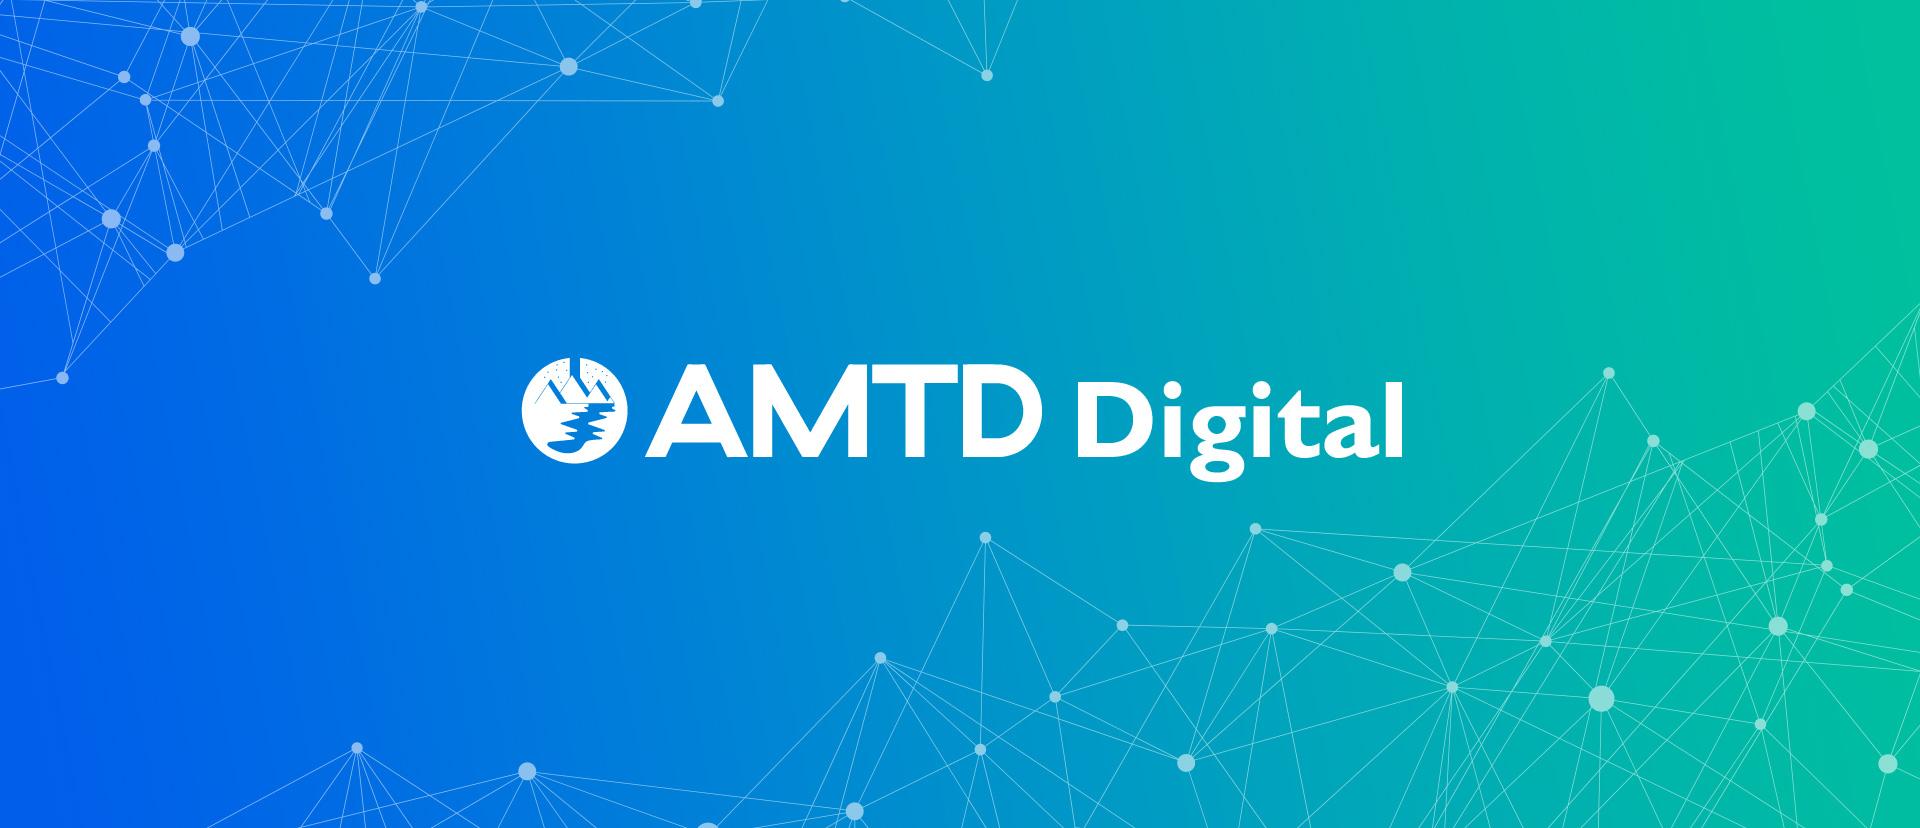 Co způsobilo Růst akcií AMTD Digital (HKD) o 19550 %